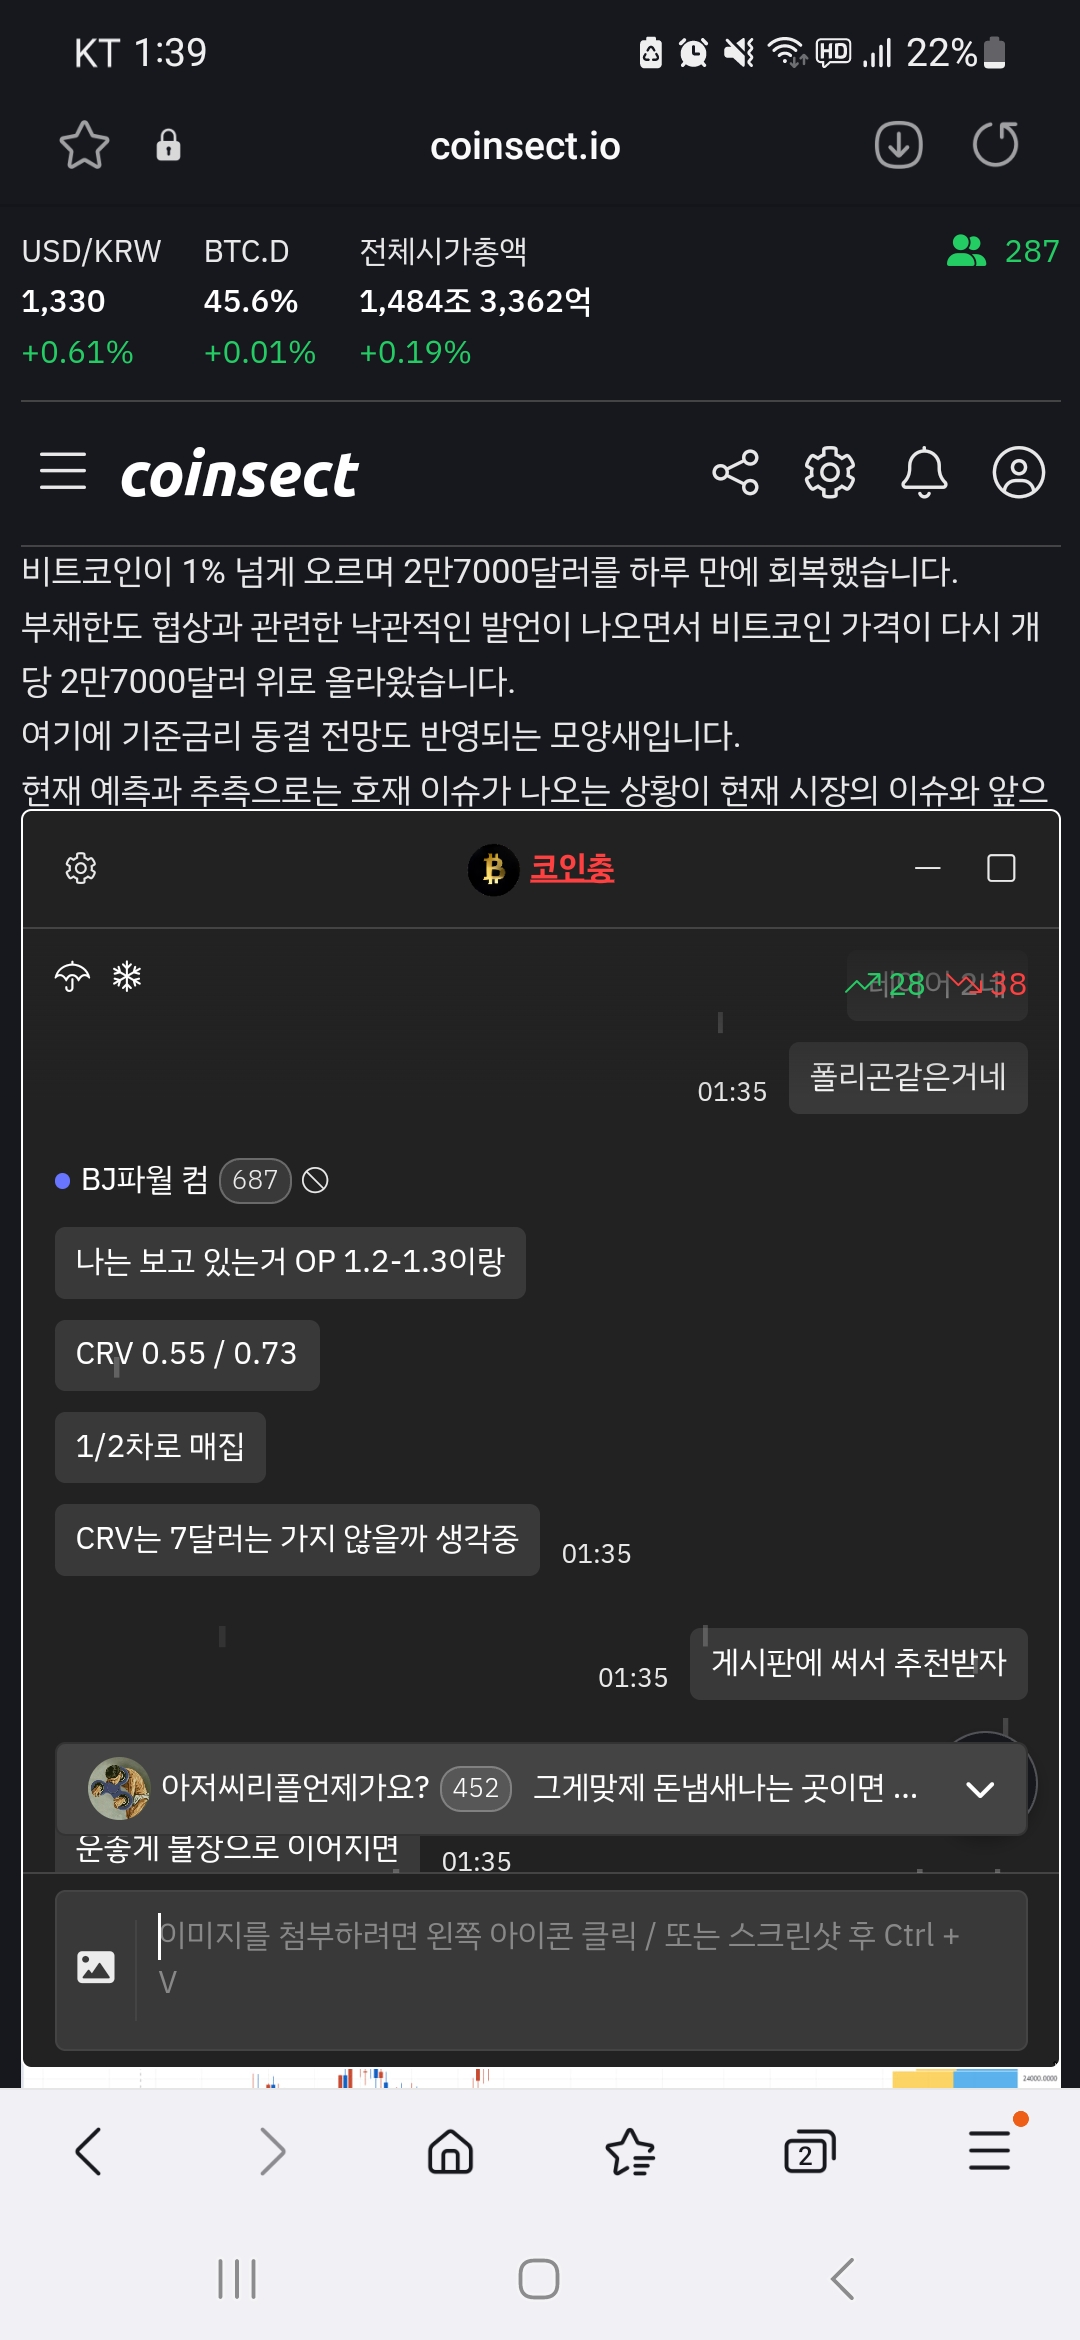 김치 프리미엄, 김프, 역프 및 암호화폐 실시간 시세 - 코인충